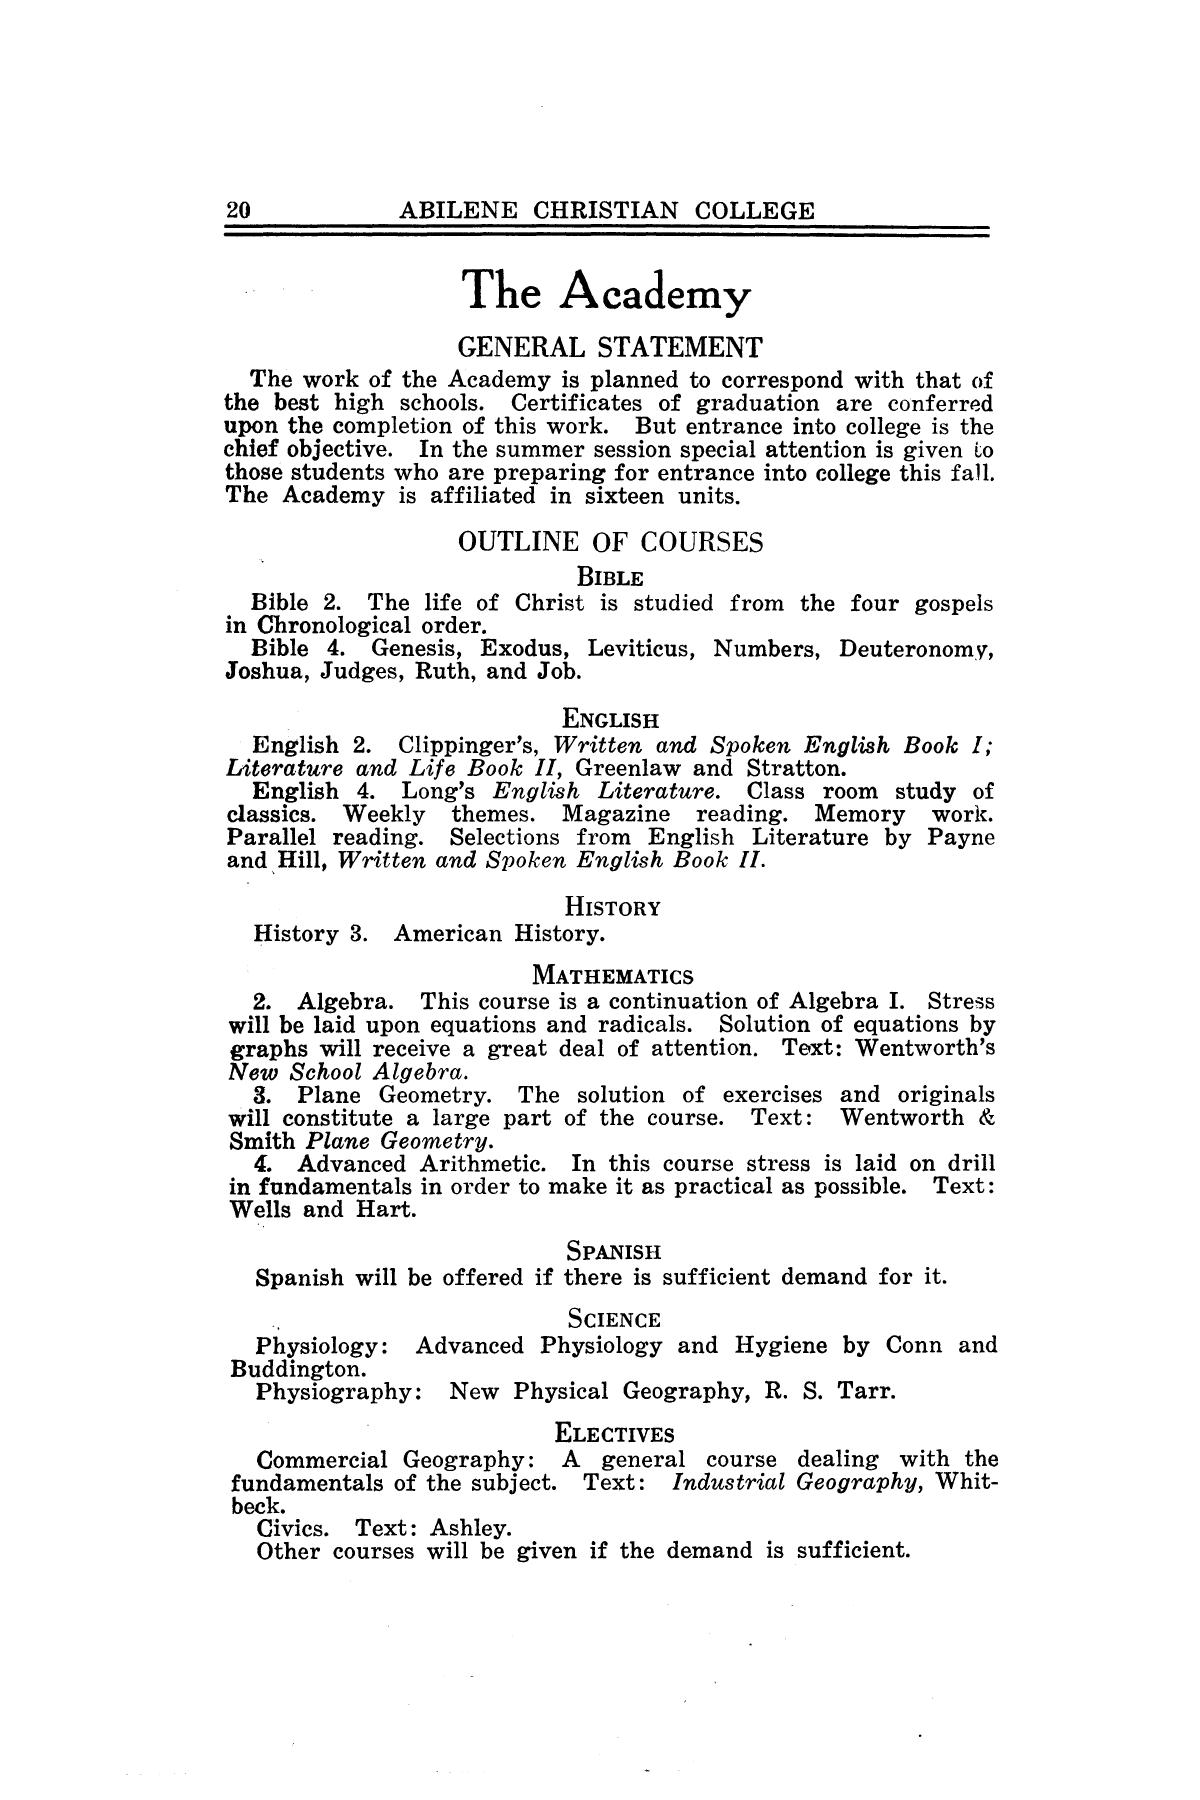 Catalog of Abilene Christian College, 1928
                                                
                                                    20
                                                